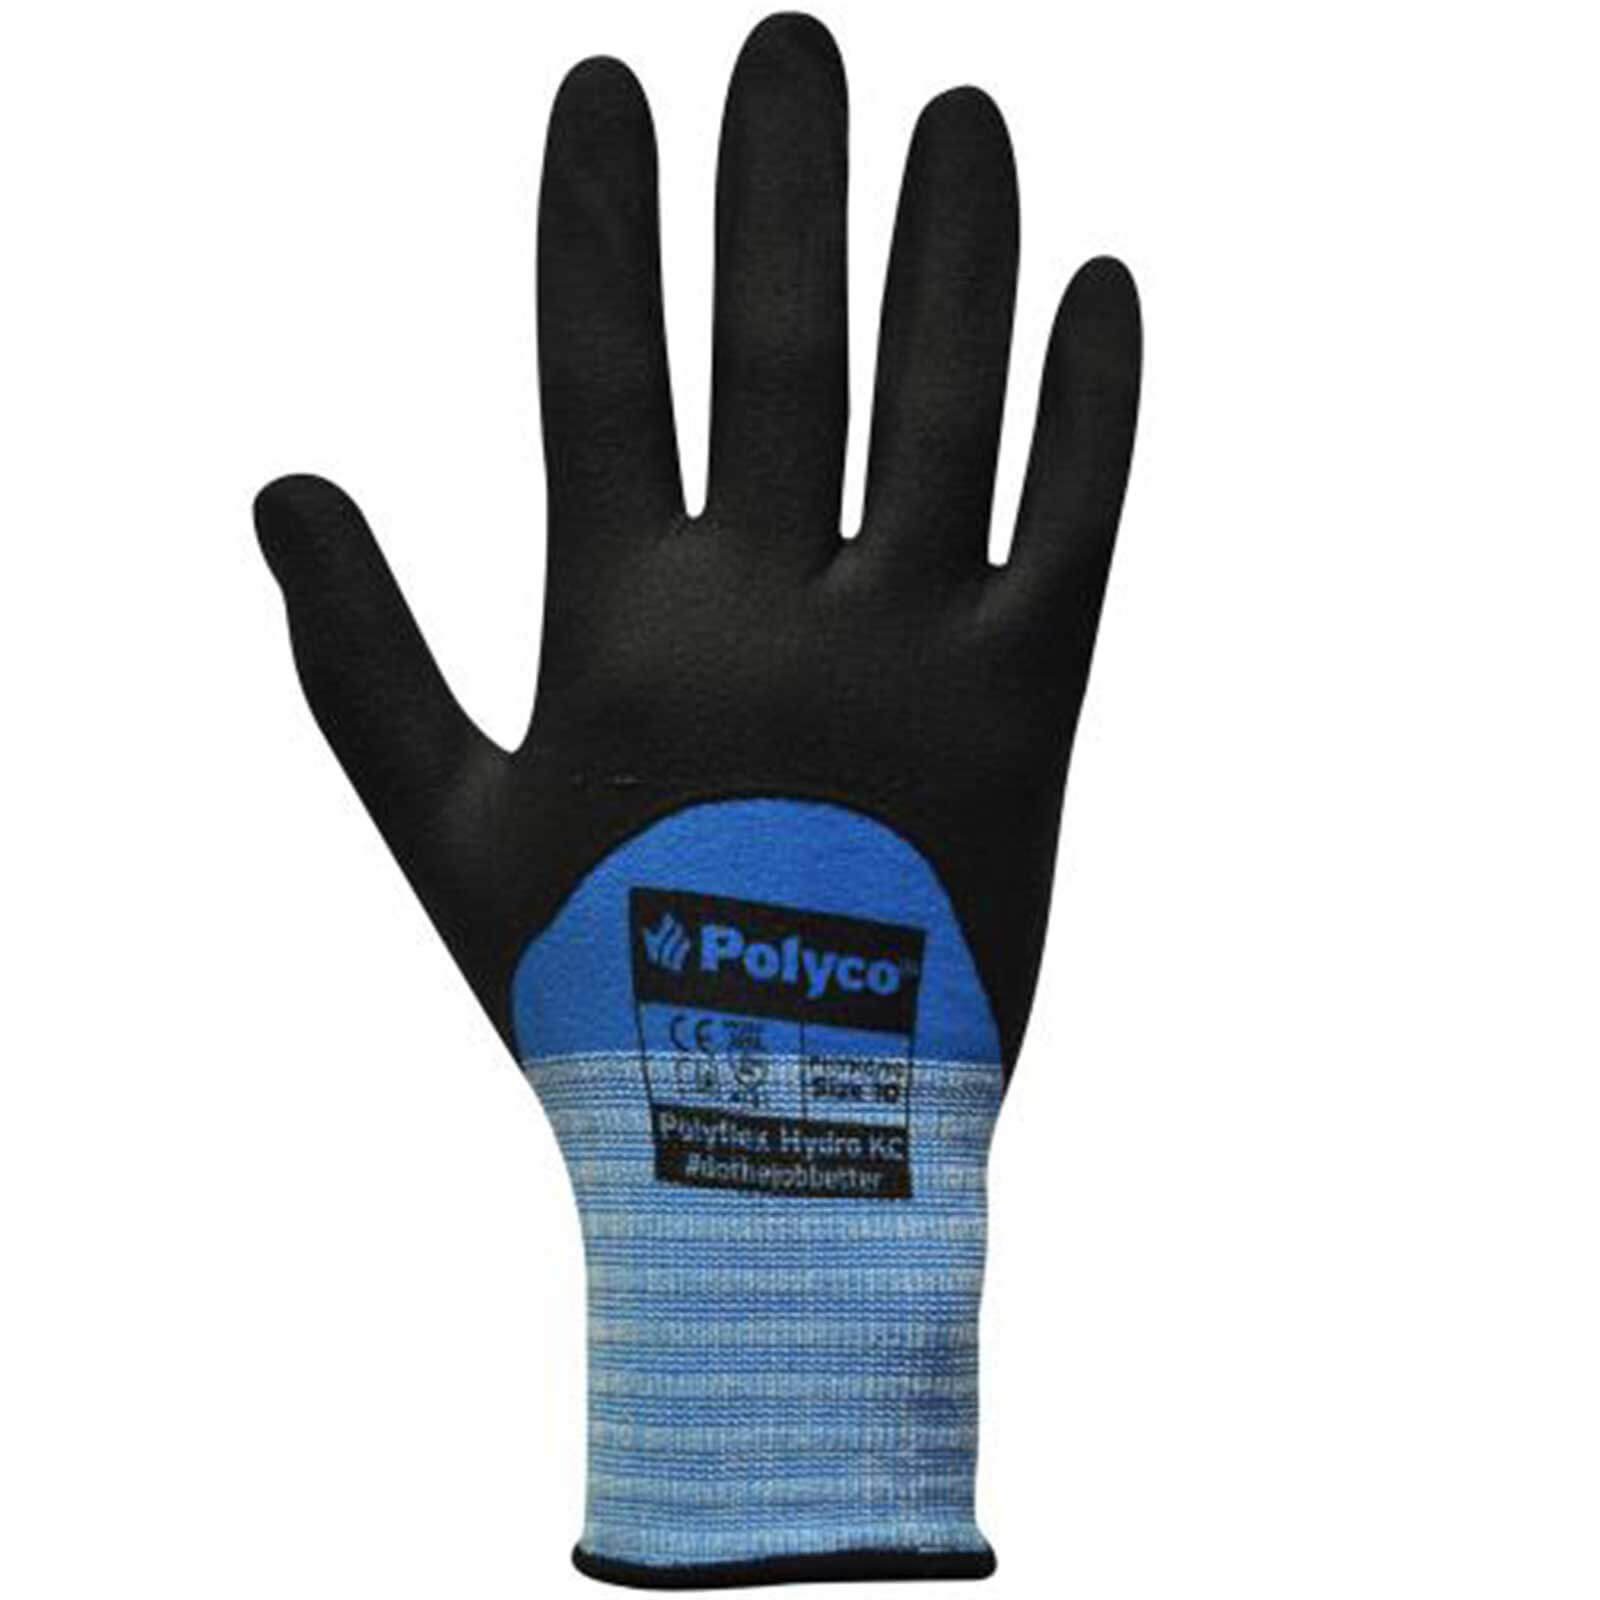 Photo of Polyco Polyflex Hydro Kc Safety Gloves L